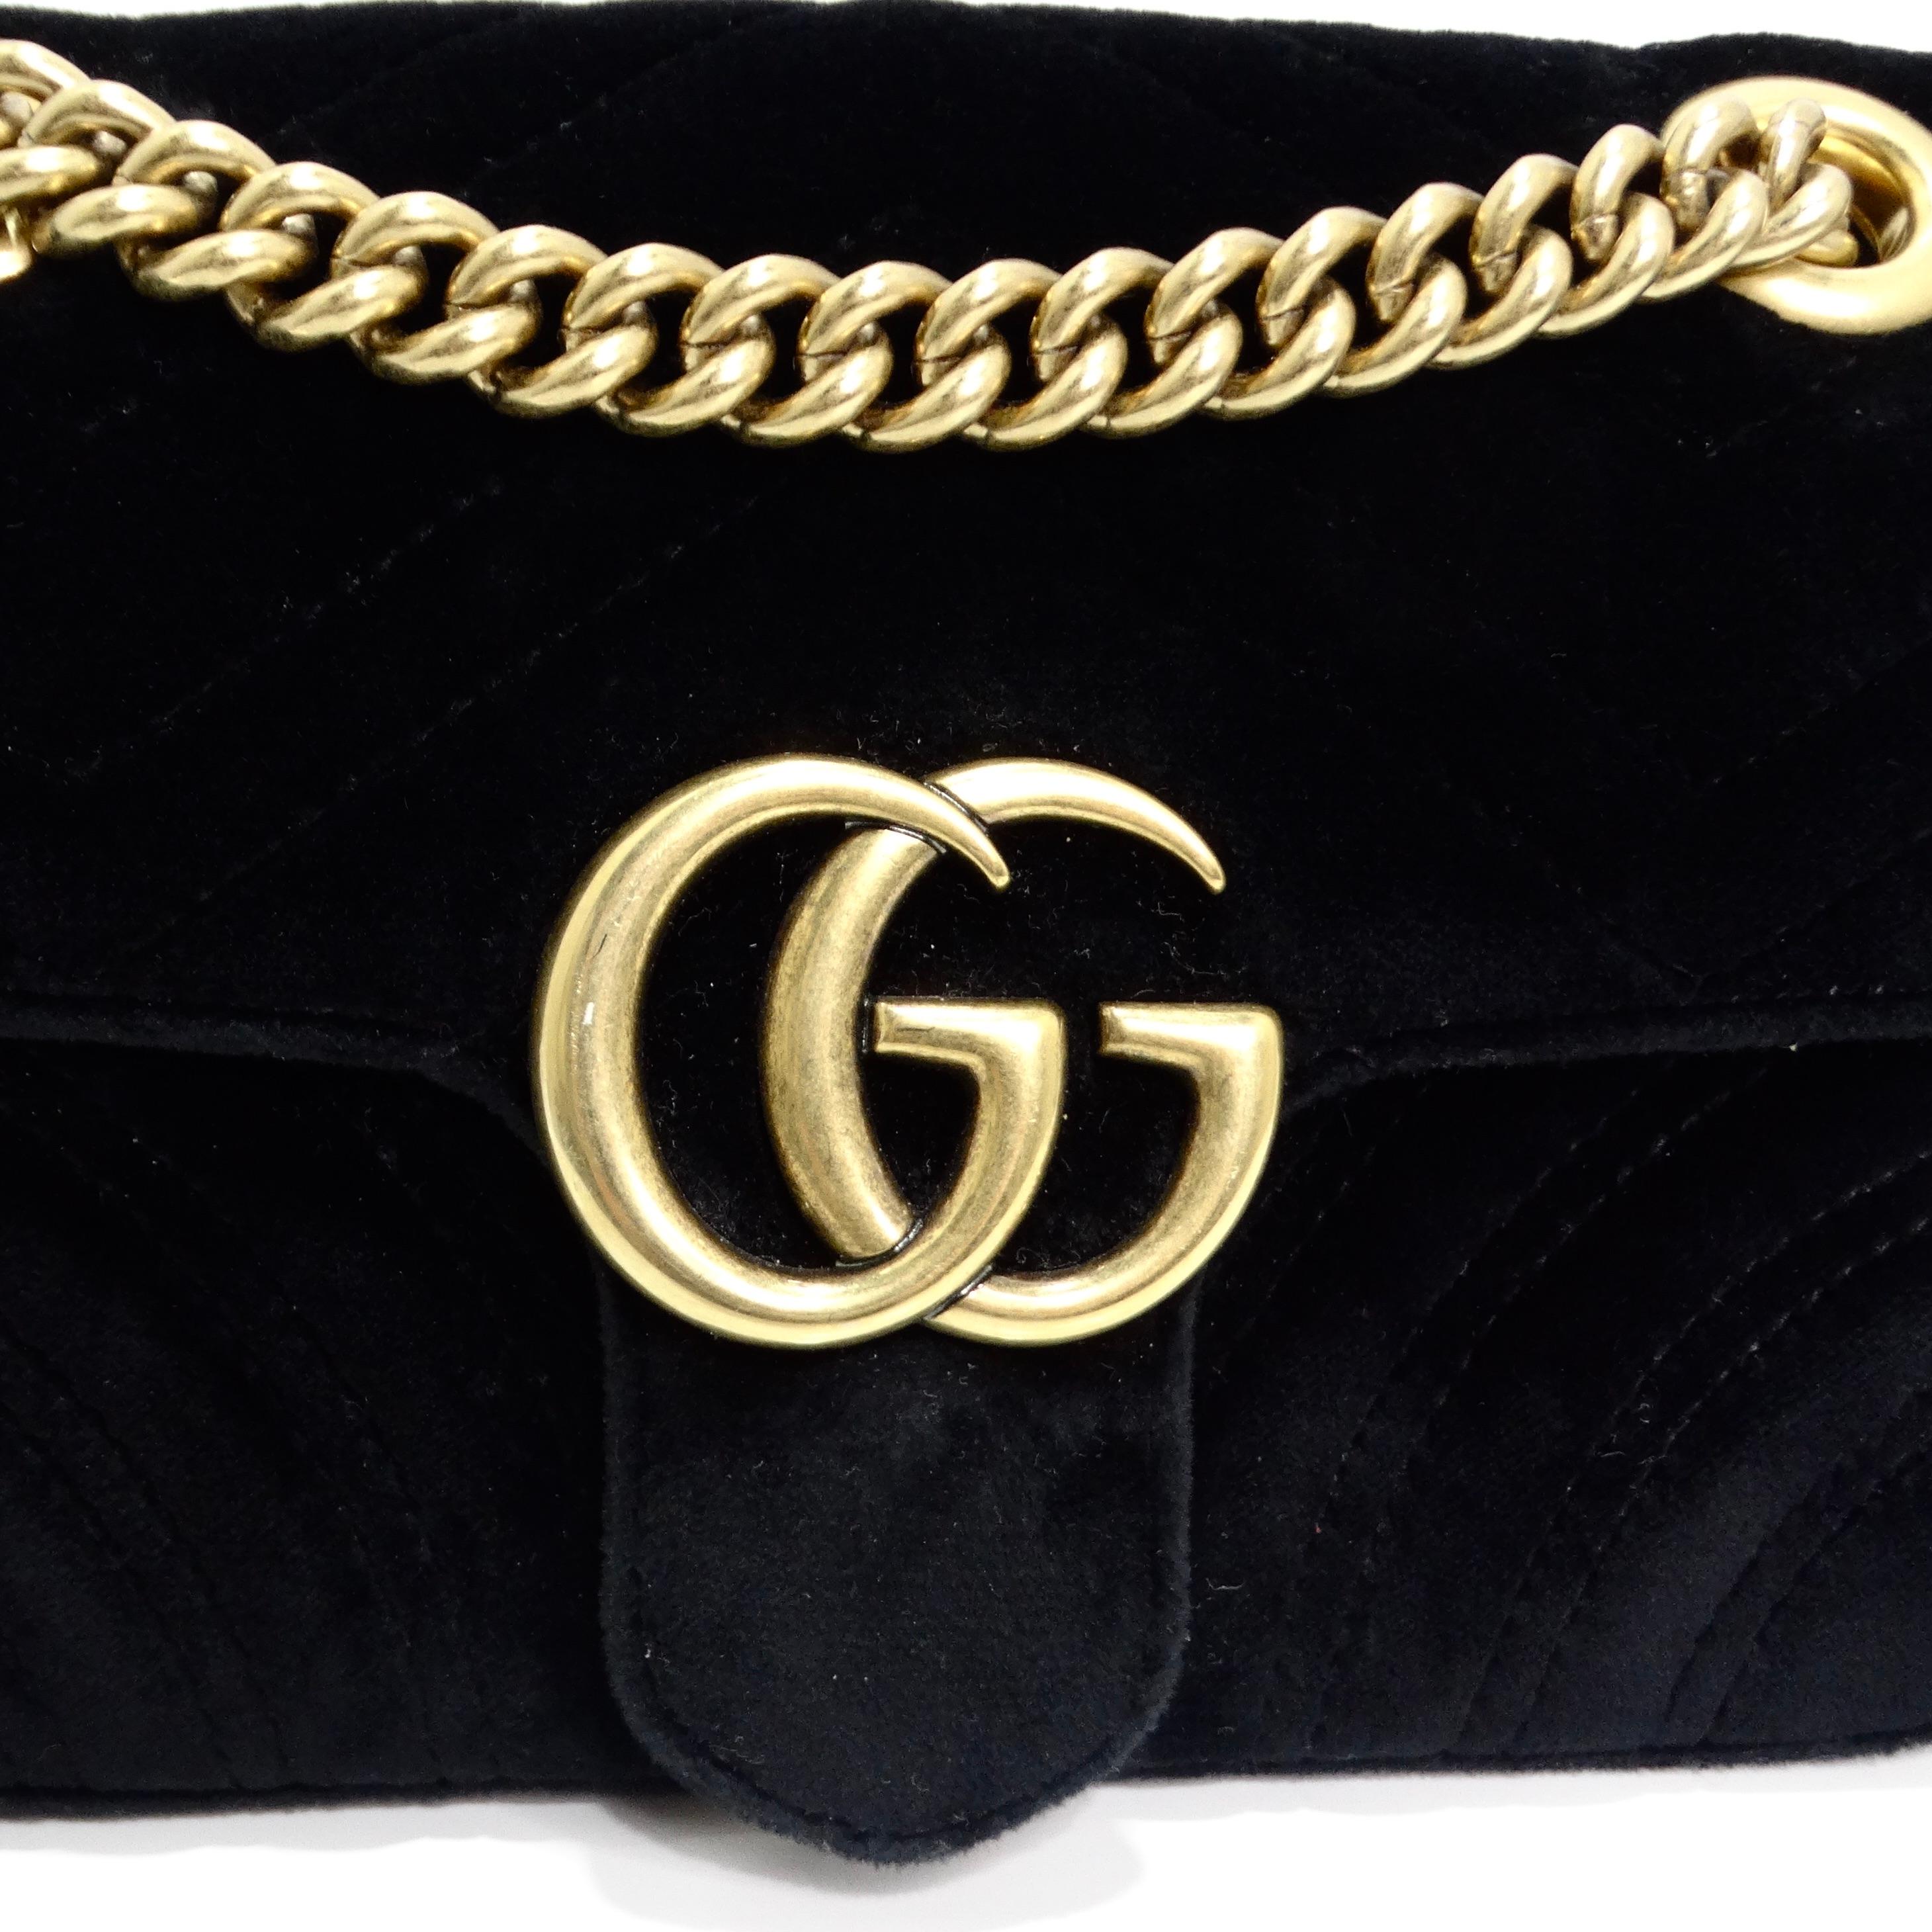 Le sac à bandoulière Gucci Velvet Matelasse Mini GG Marmont en noir est un accessoire raffiné et luxueux qui allie élégance et modernité. Confectionné en velours matelassé souple dans une teinte noire intemporelle, ce sac est d'une grande